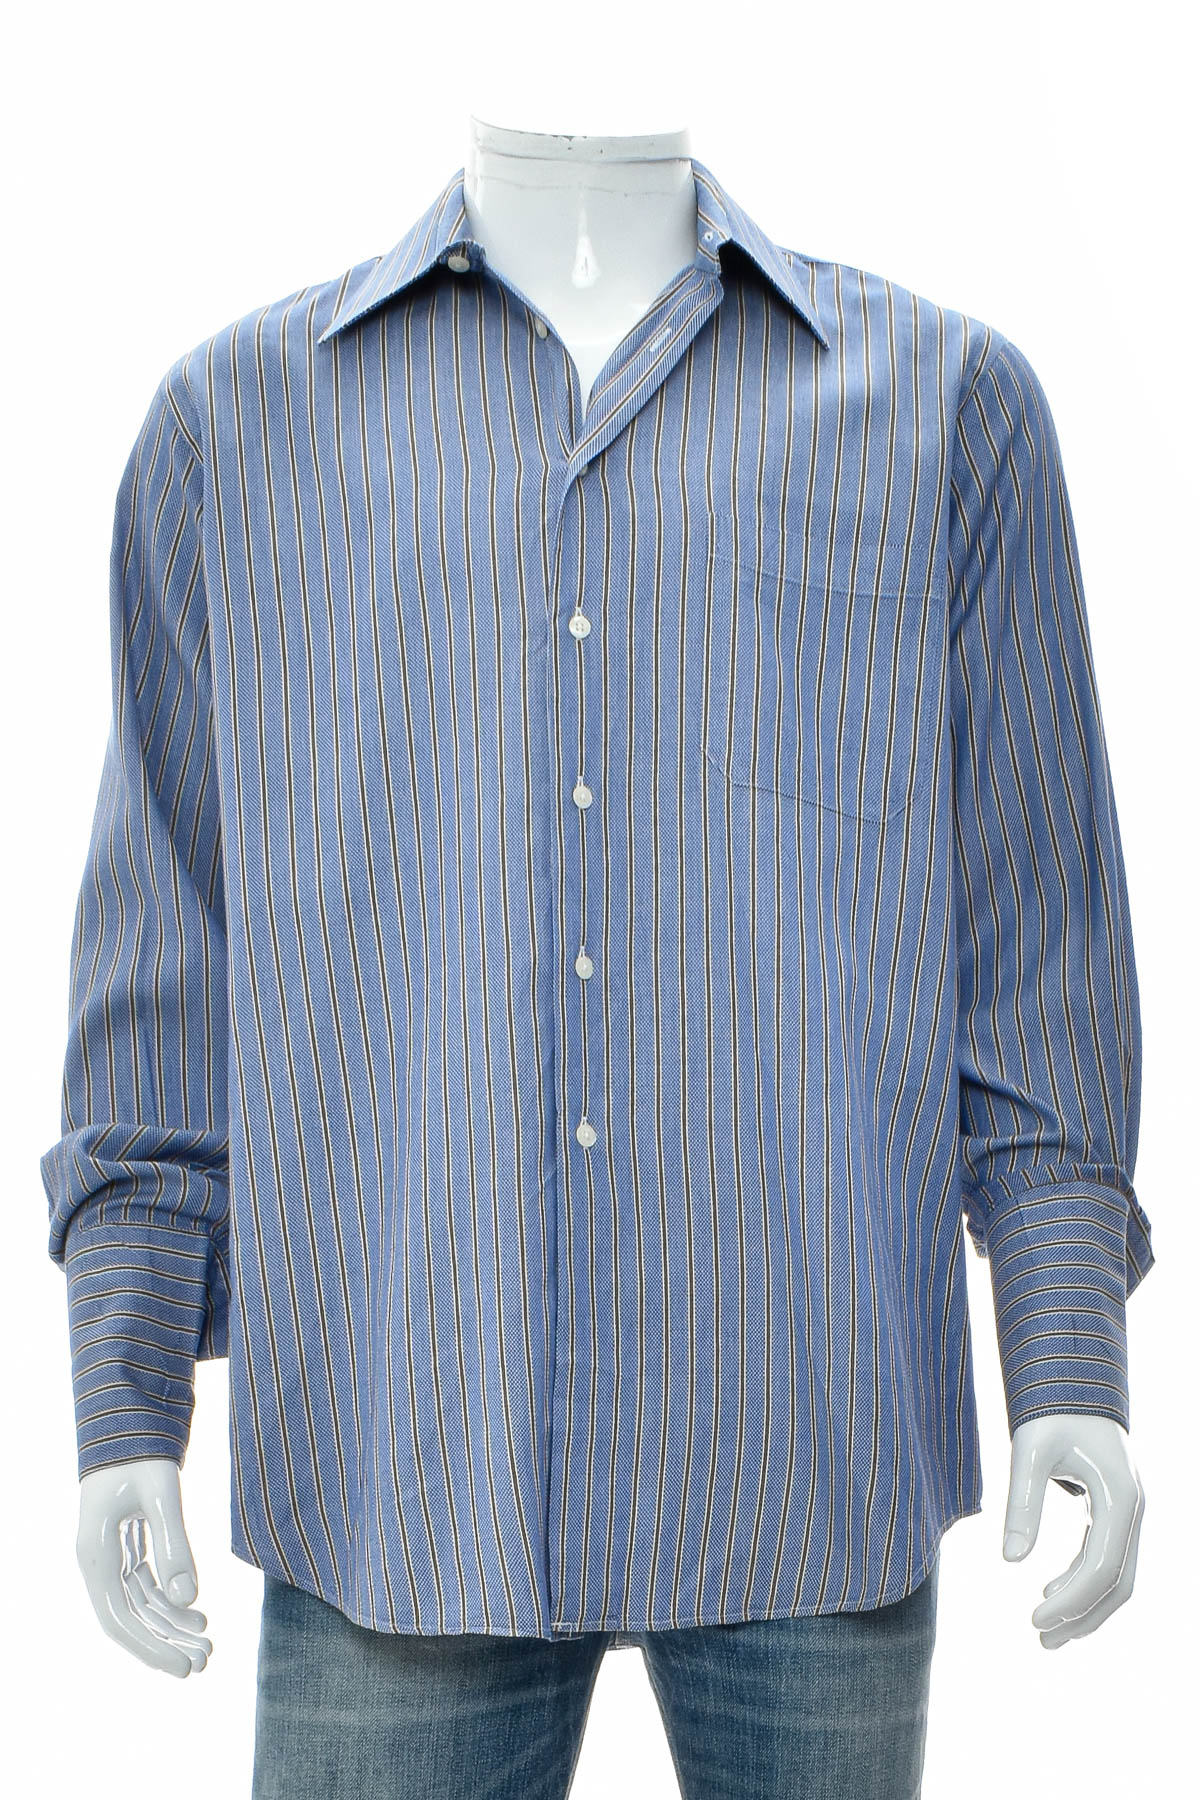 Ανδρικό πουκάμισο - Paul Fredrick - 0